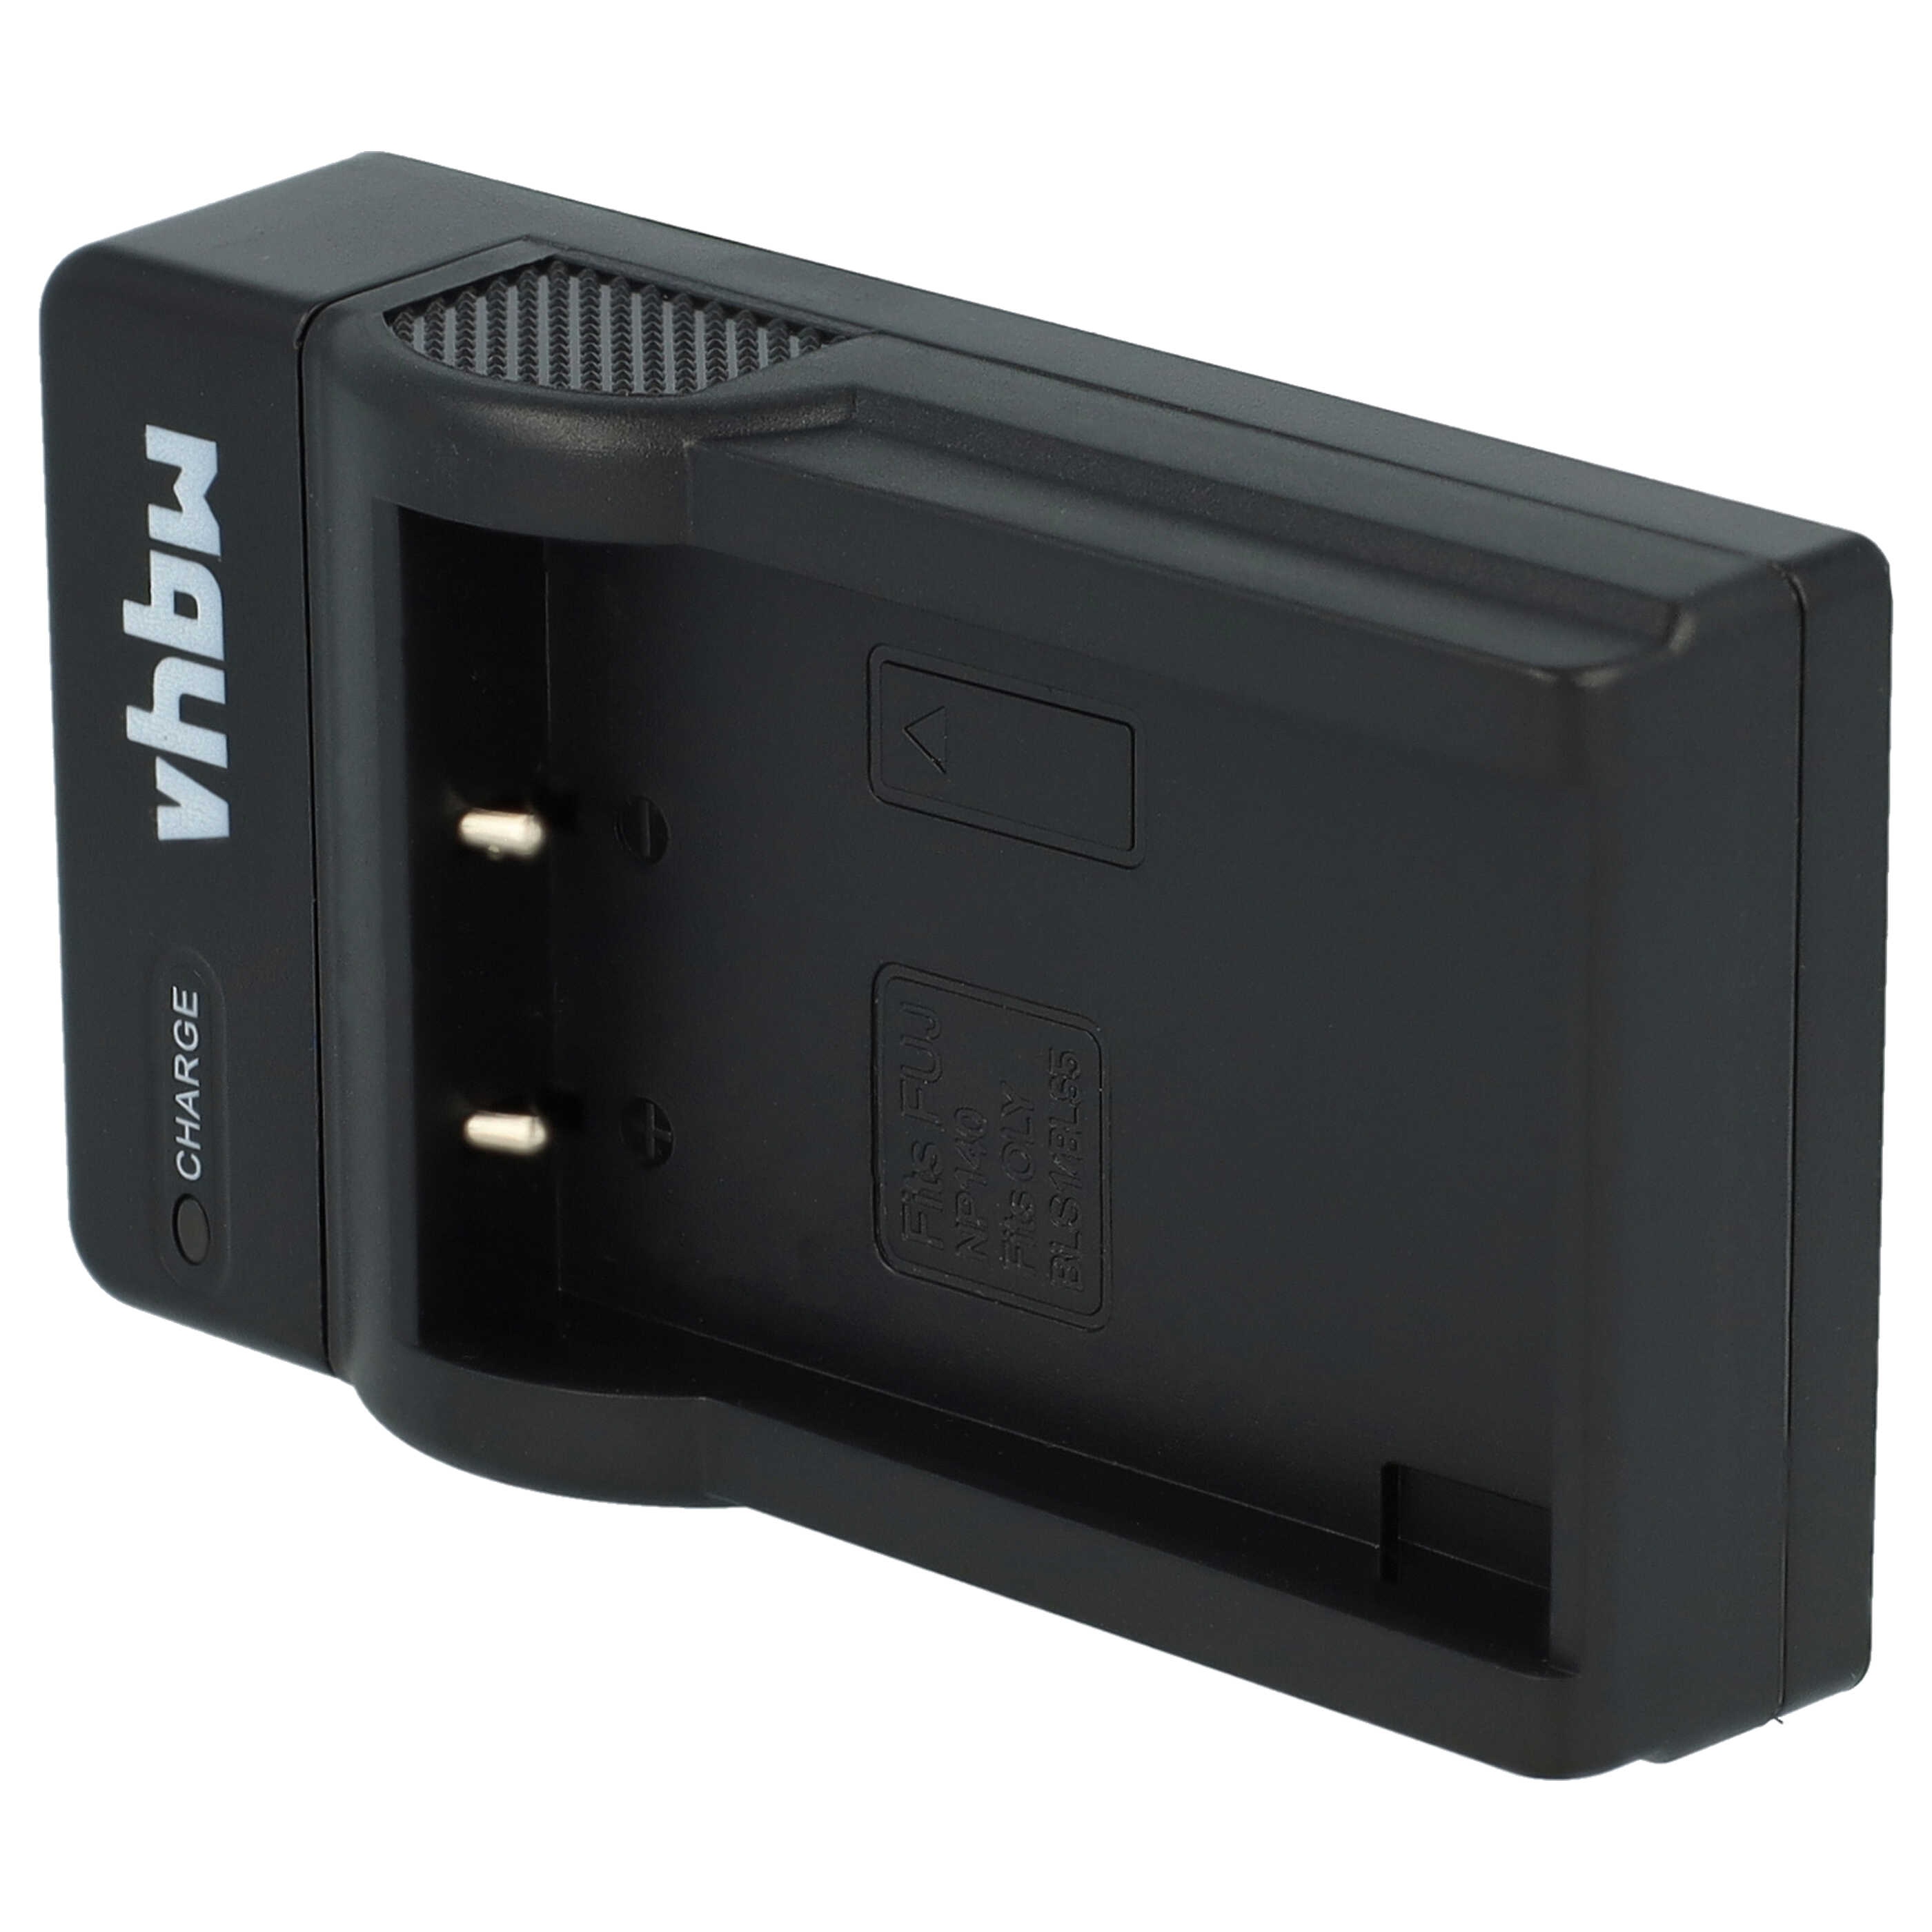 Akku Ladegerät passend für FinePix S100 Kamera u.a. - 0,5 A, 8,4 V